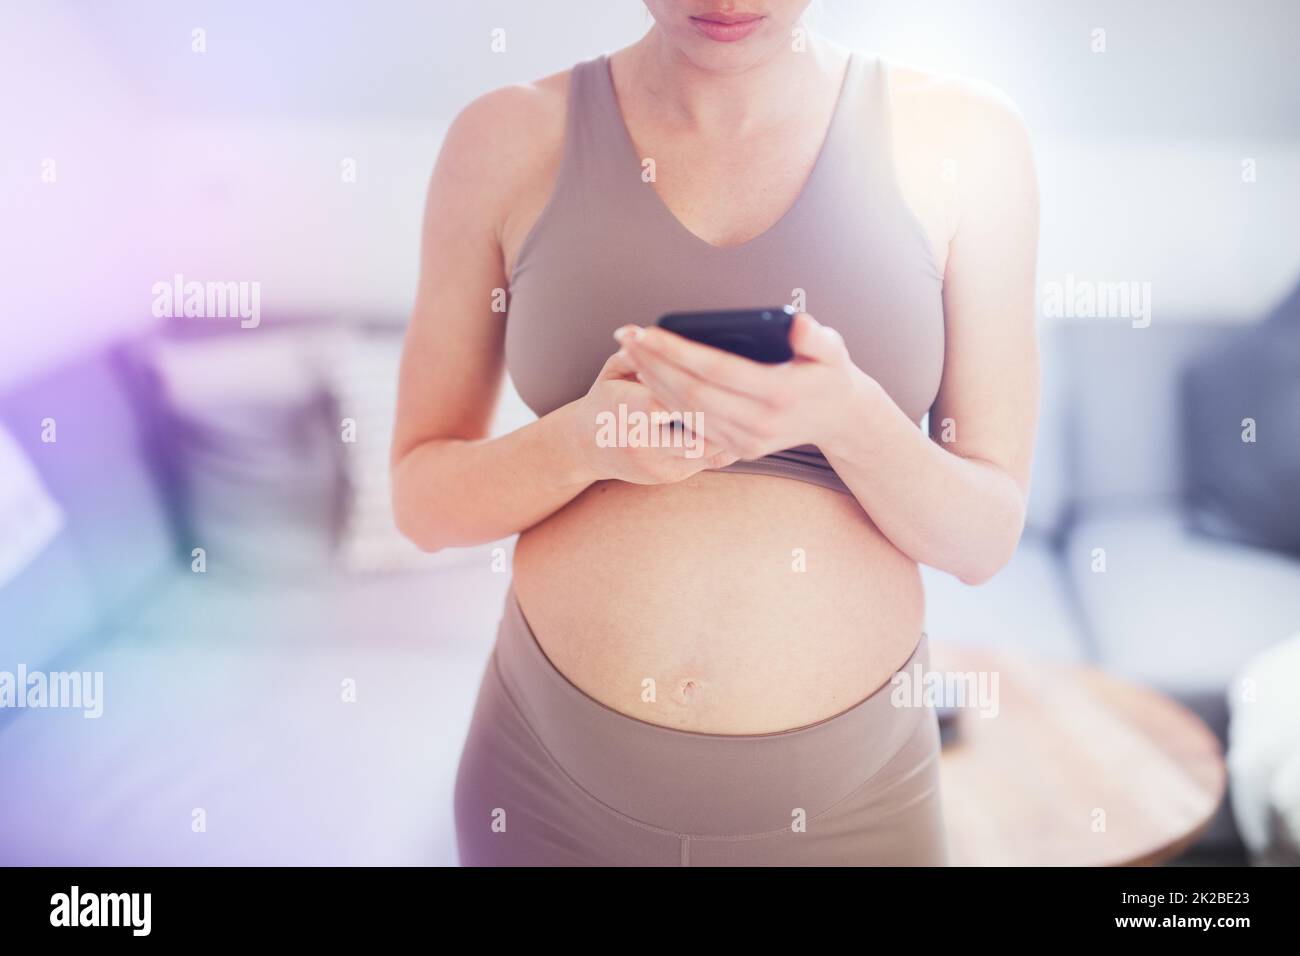 Nahaufnahme des schwangeren weiblichen Bauches. Frau, die eine Smartphone-App in der Wohnung hält und verwendet. Schwangerschaft, Technologie, Online-Shopping, Vorbereitung und Erwartungskonzept. Stockfoto